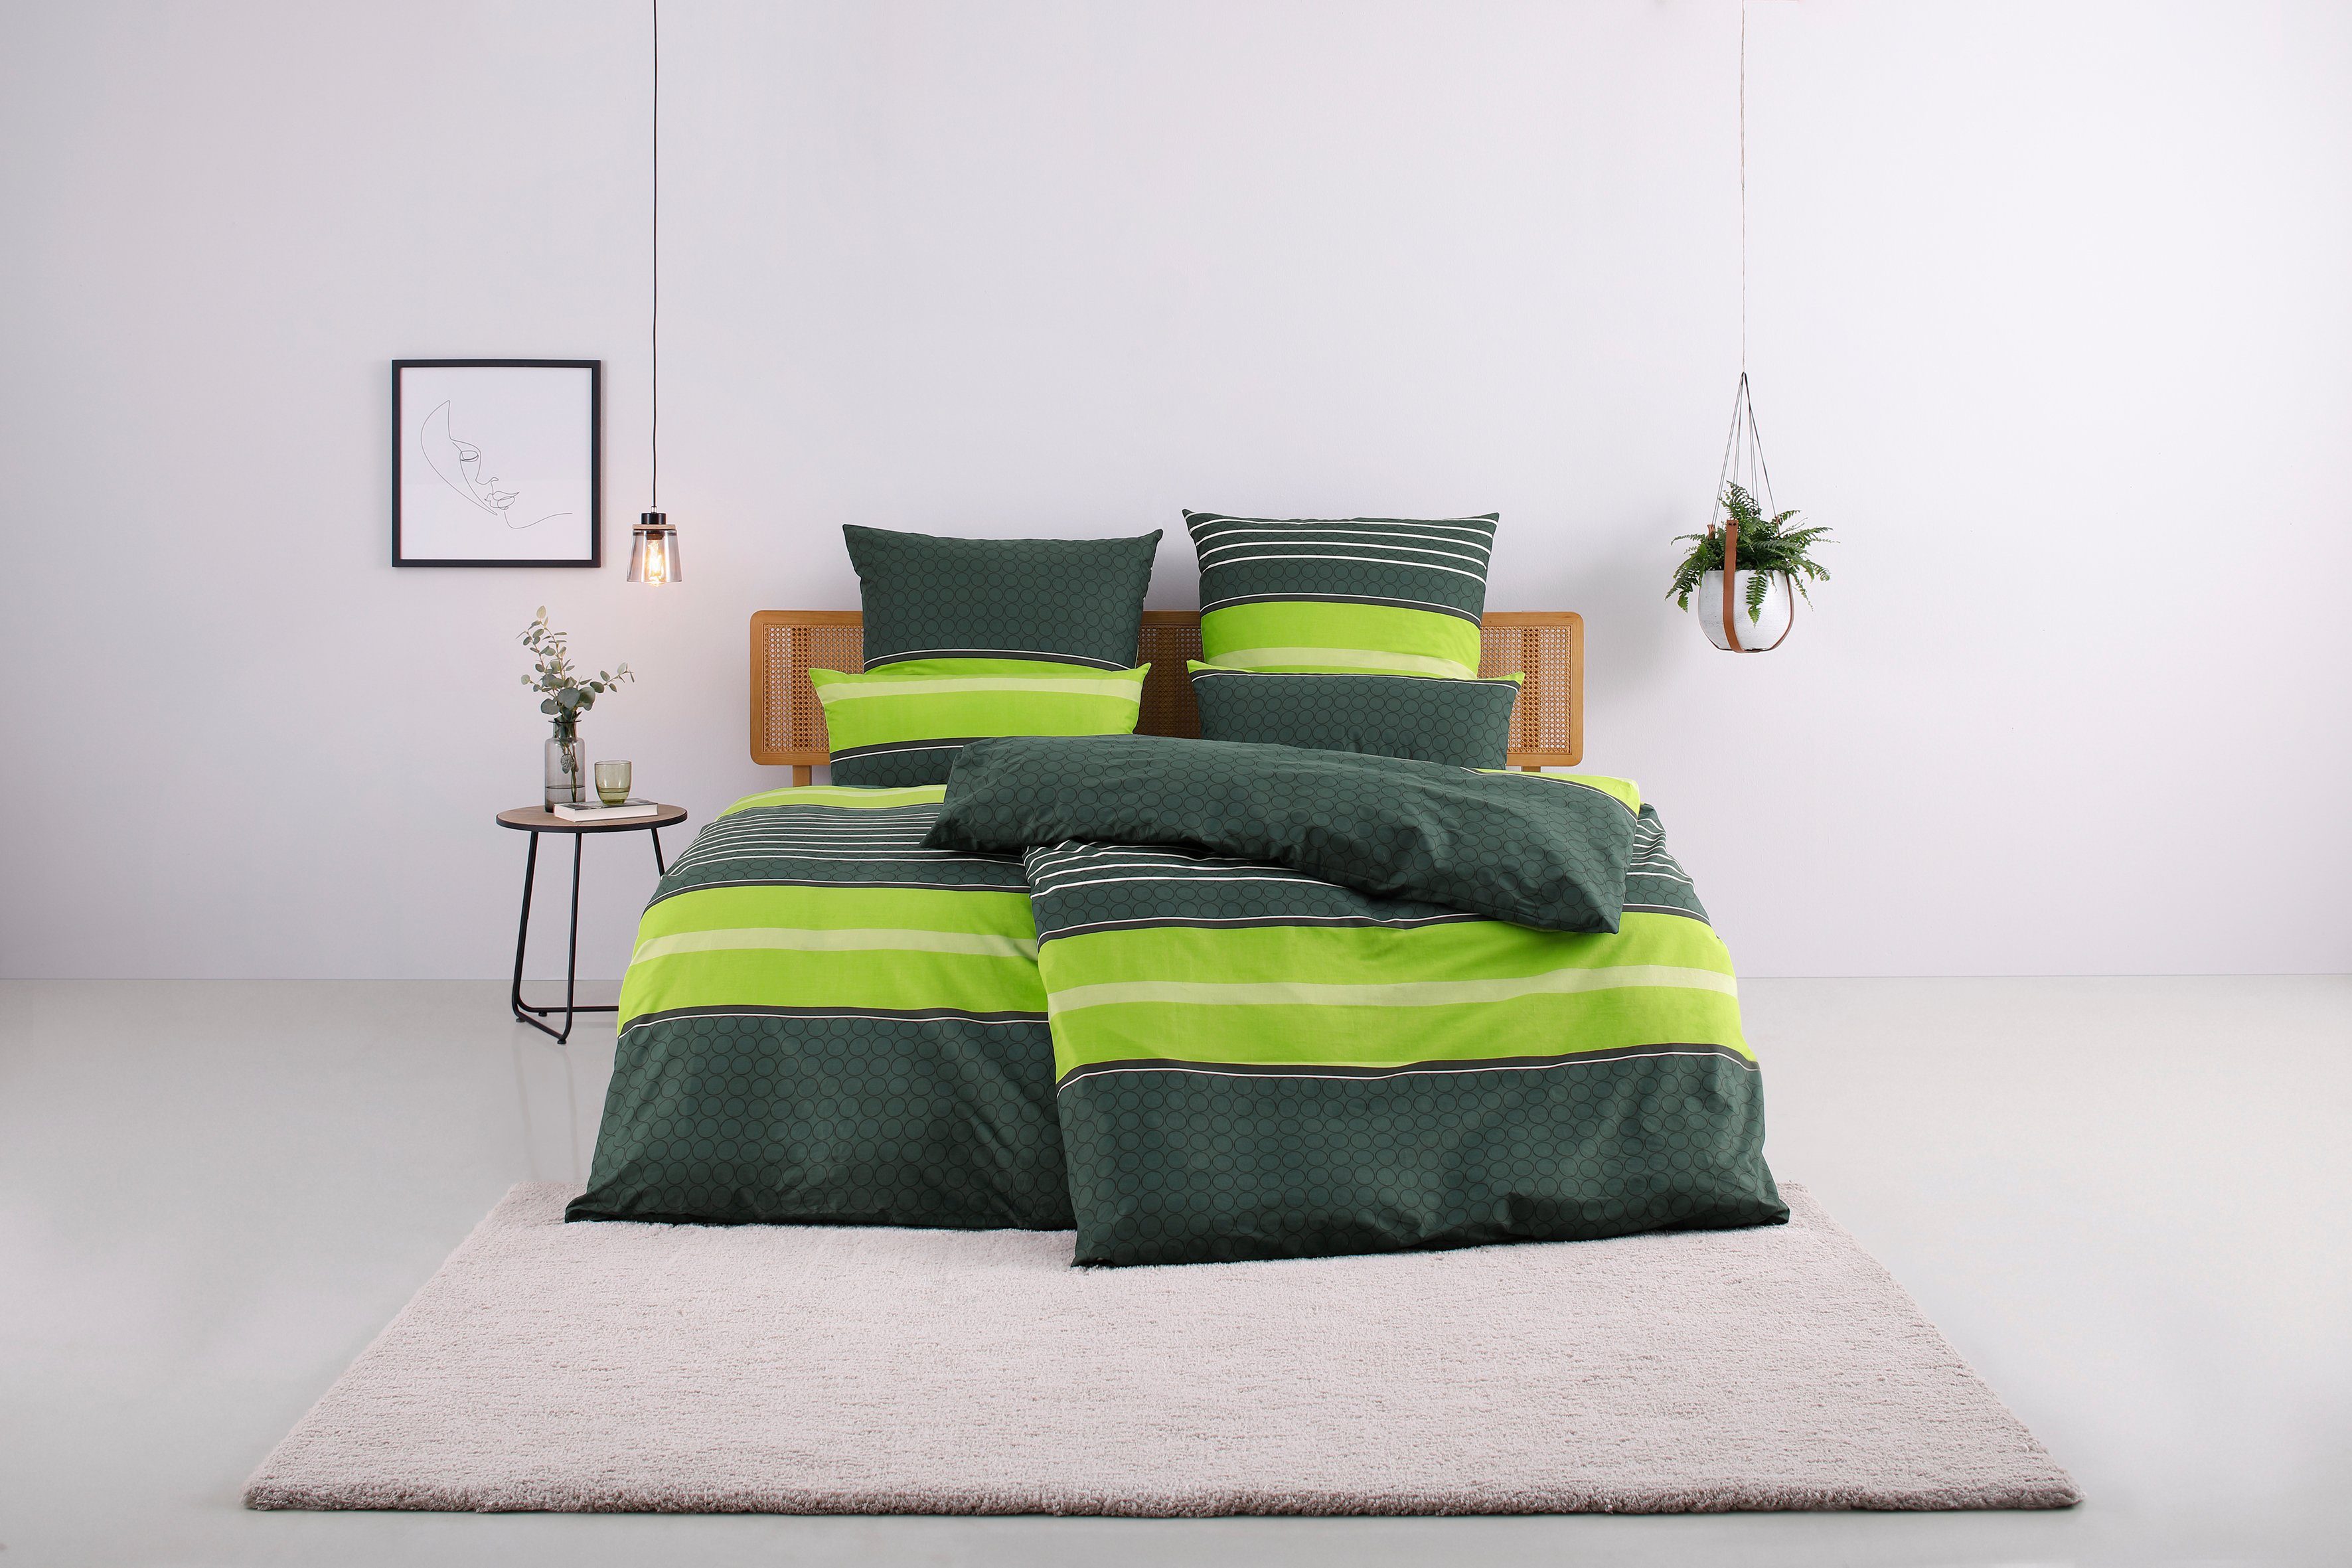 Bettwäsche Circle in Gr. 135x200 oder 155x220 cm, my home, Linon, 2 teilig, Bettwäsche aus Baumwolle mit Streifen-Design, moderne Bettwäsche grün